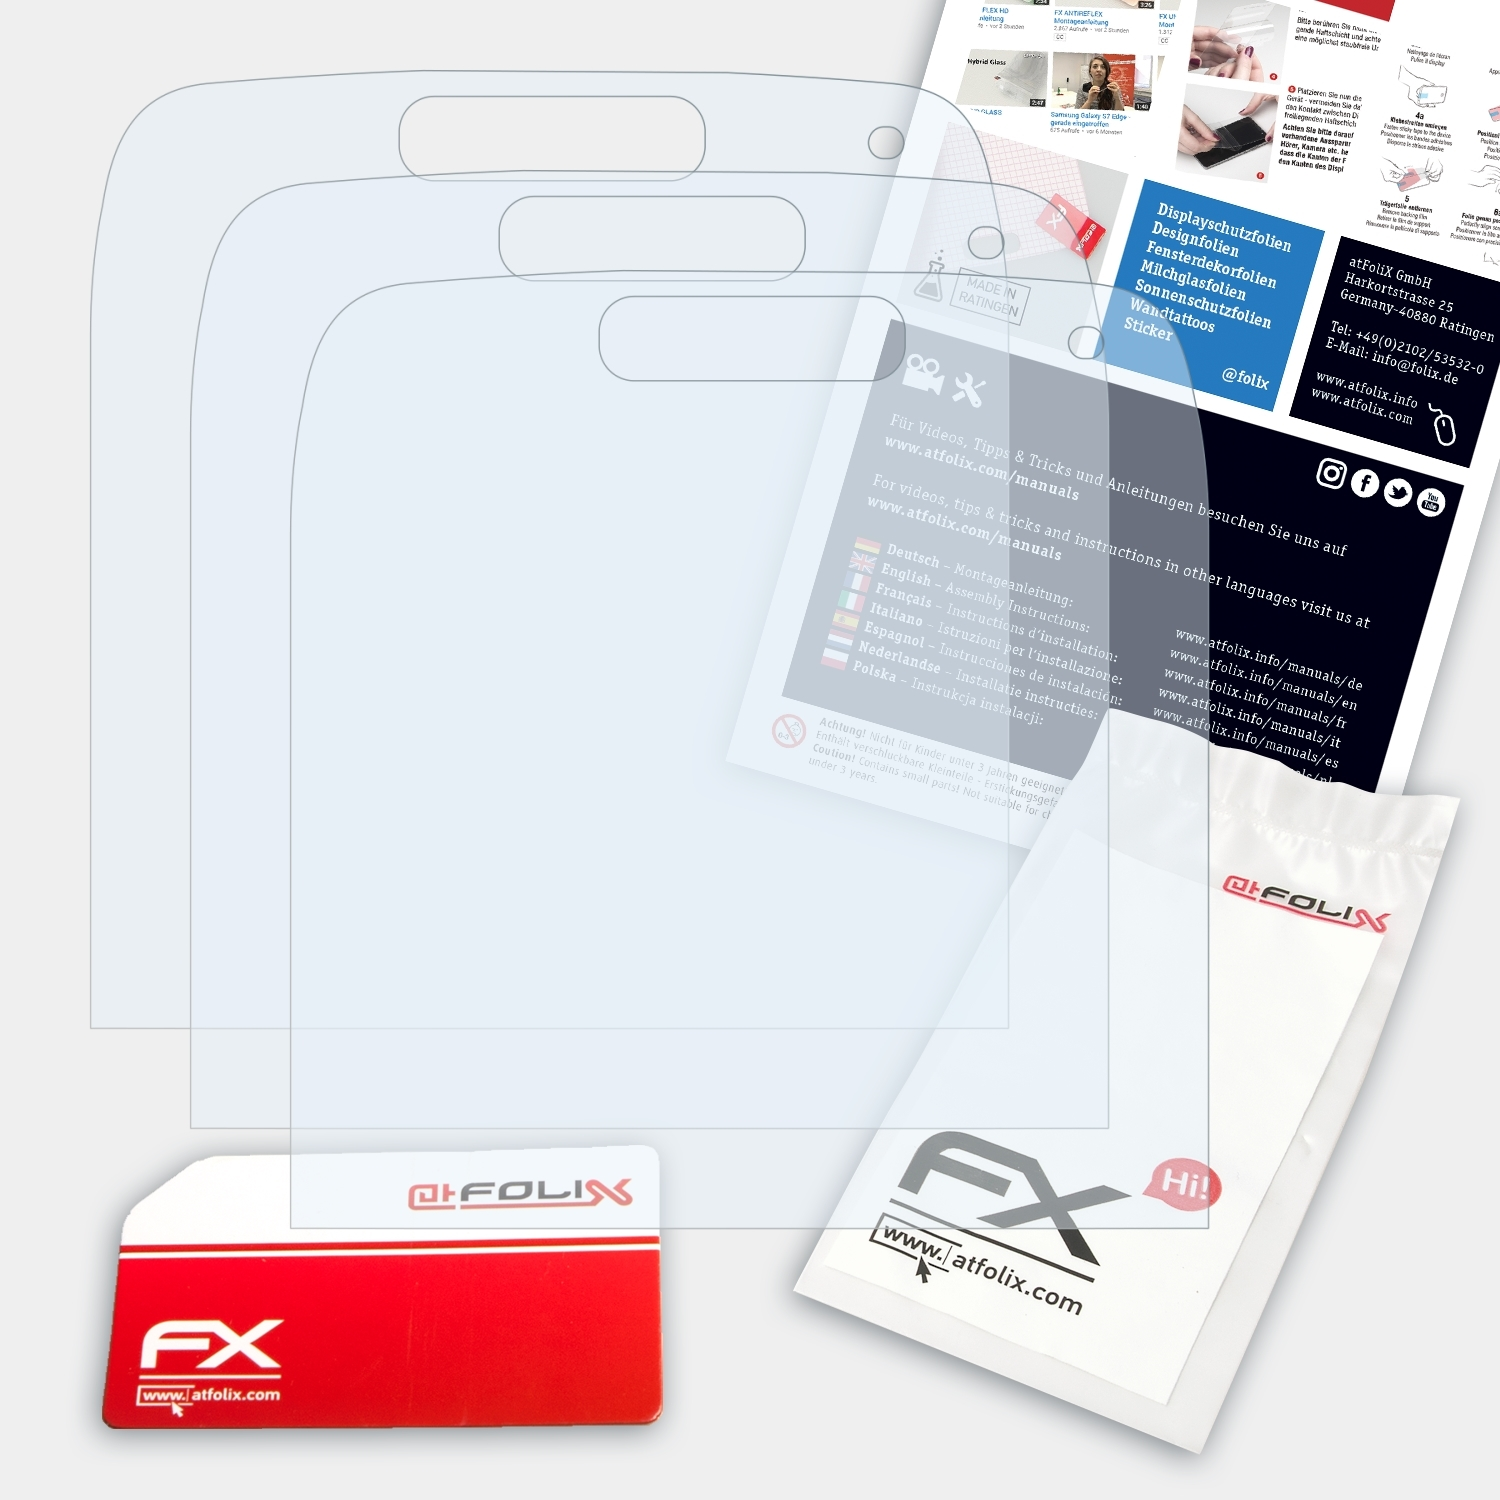 ATFOLIX 3x FX-Clear Displayschutz(für E72) Nokia